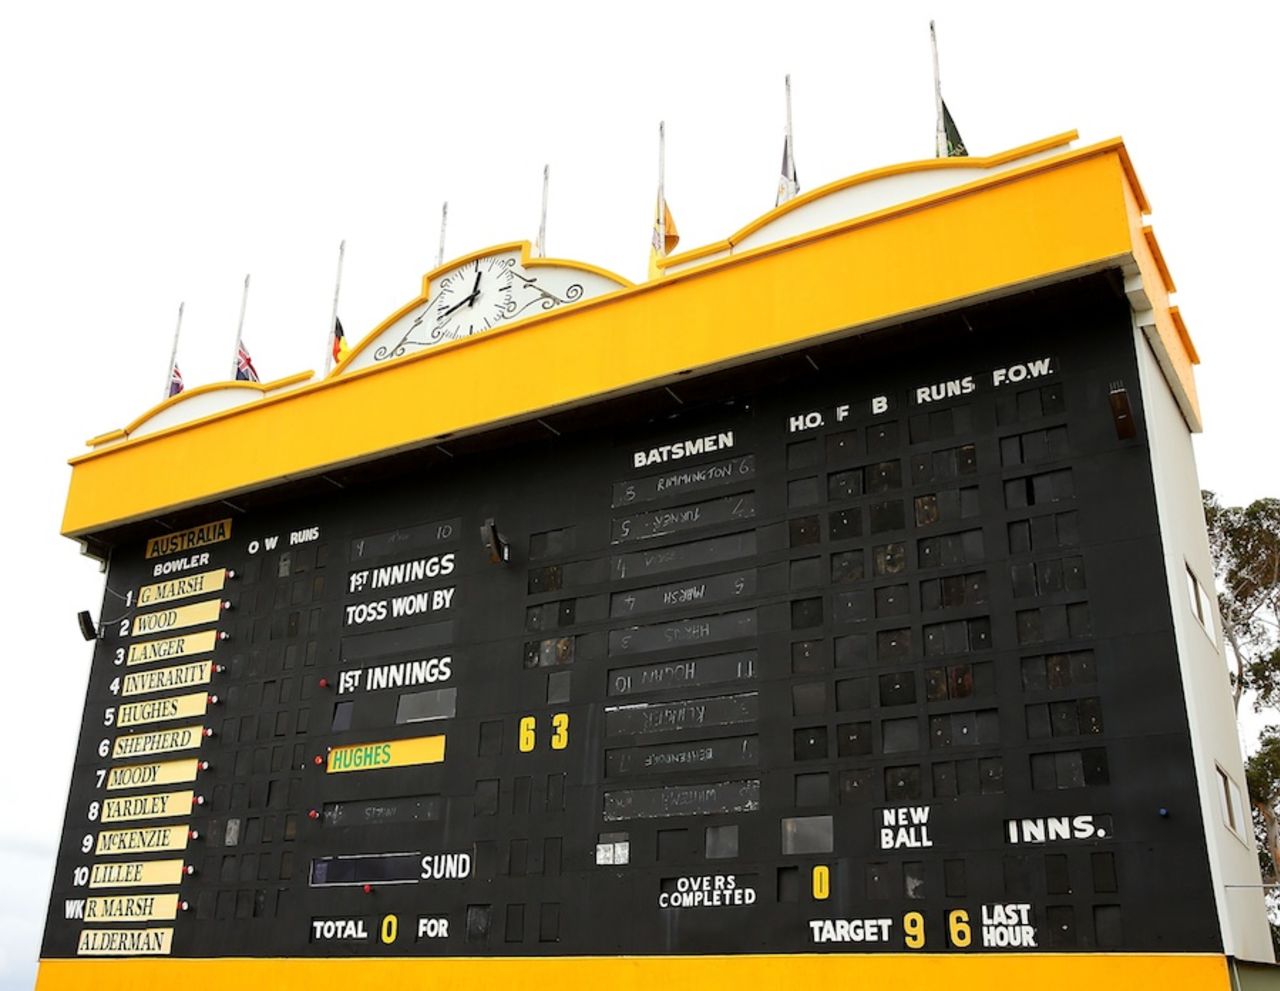 A tribute to Phillip Hughes on the WACA scoreboard, Perth, November 28, 2014